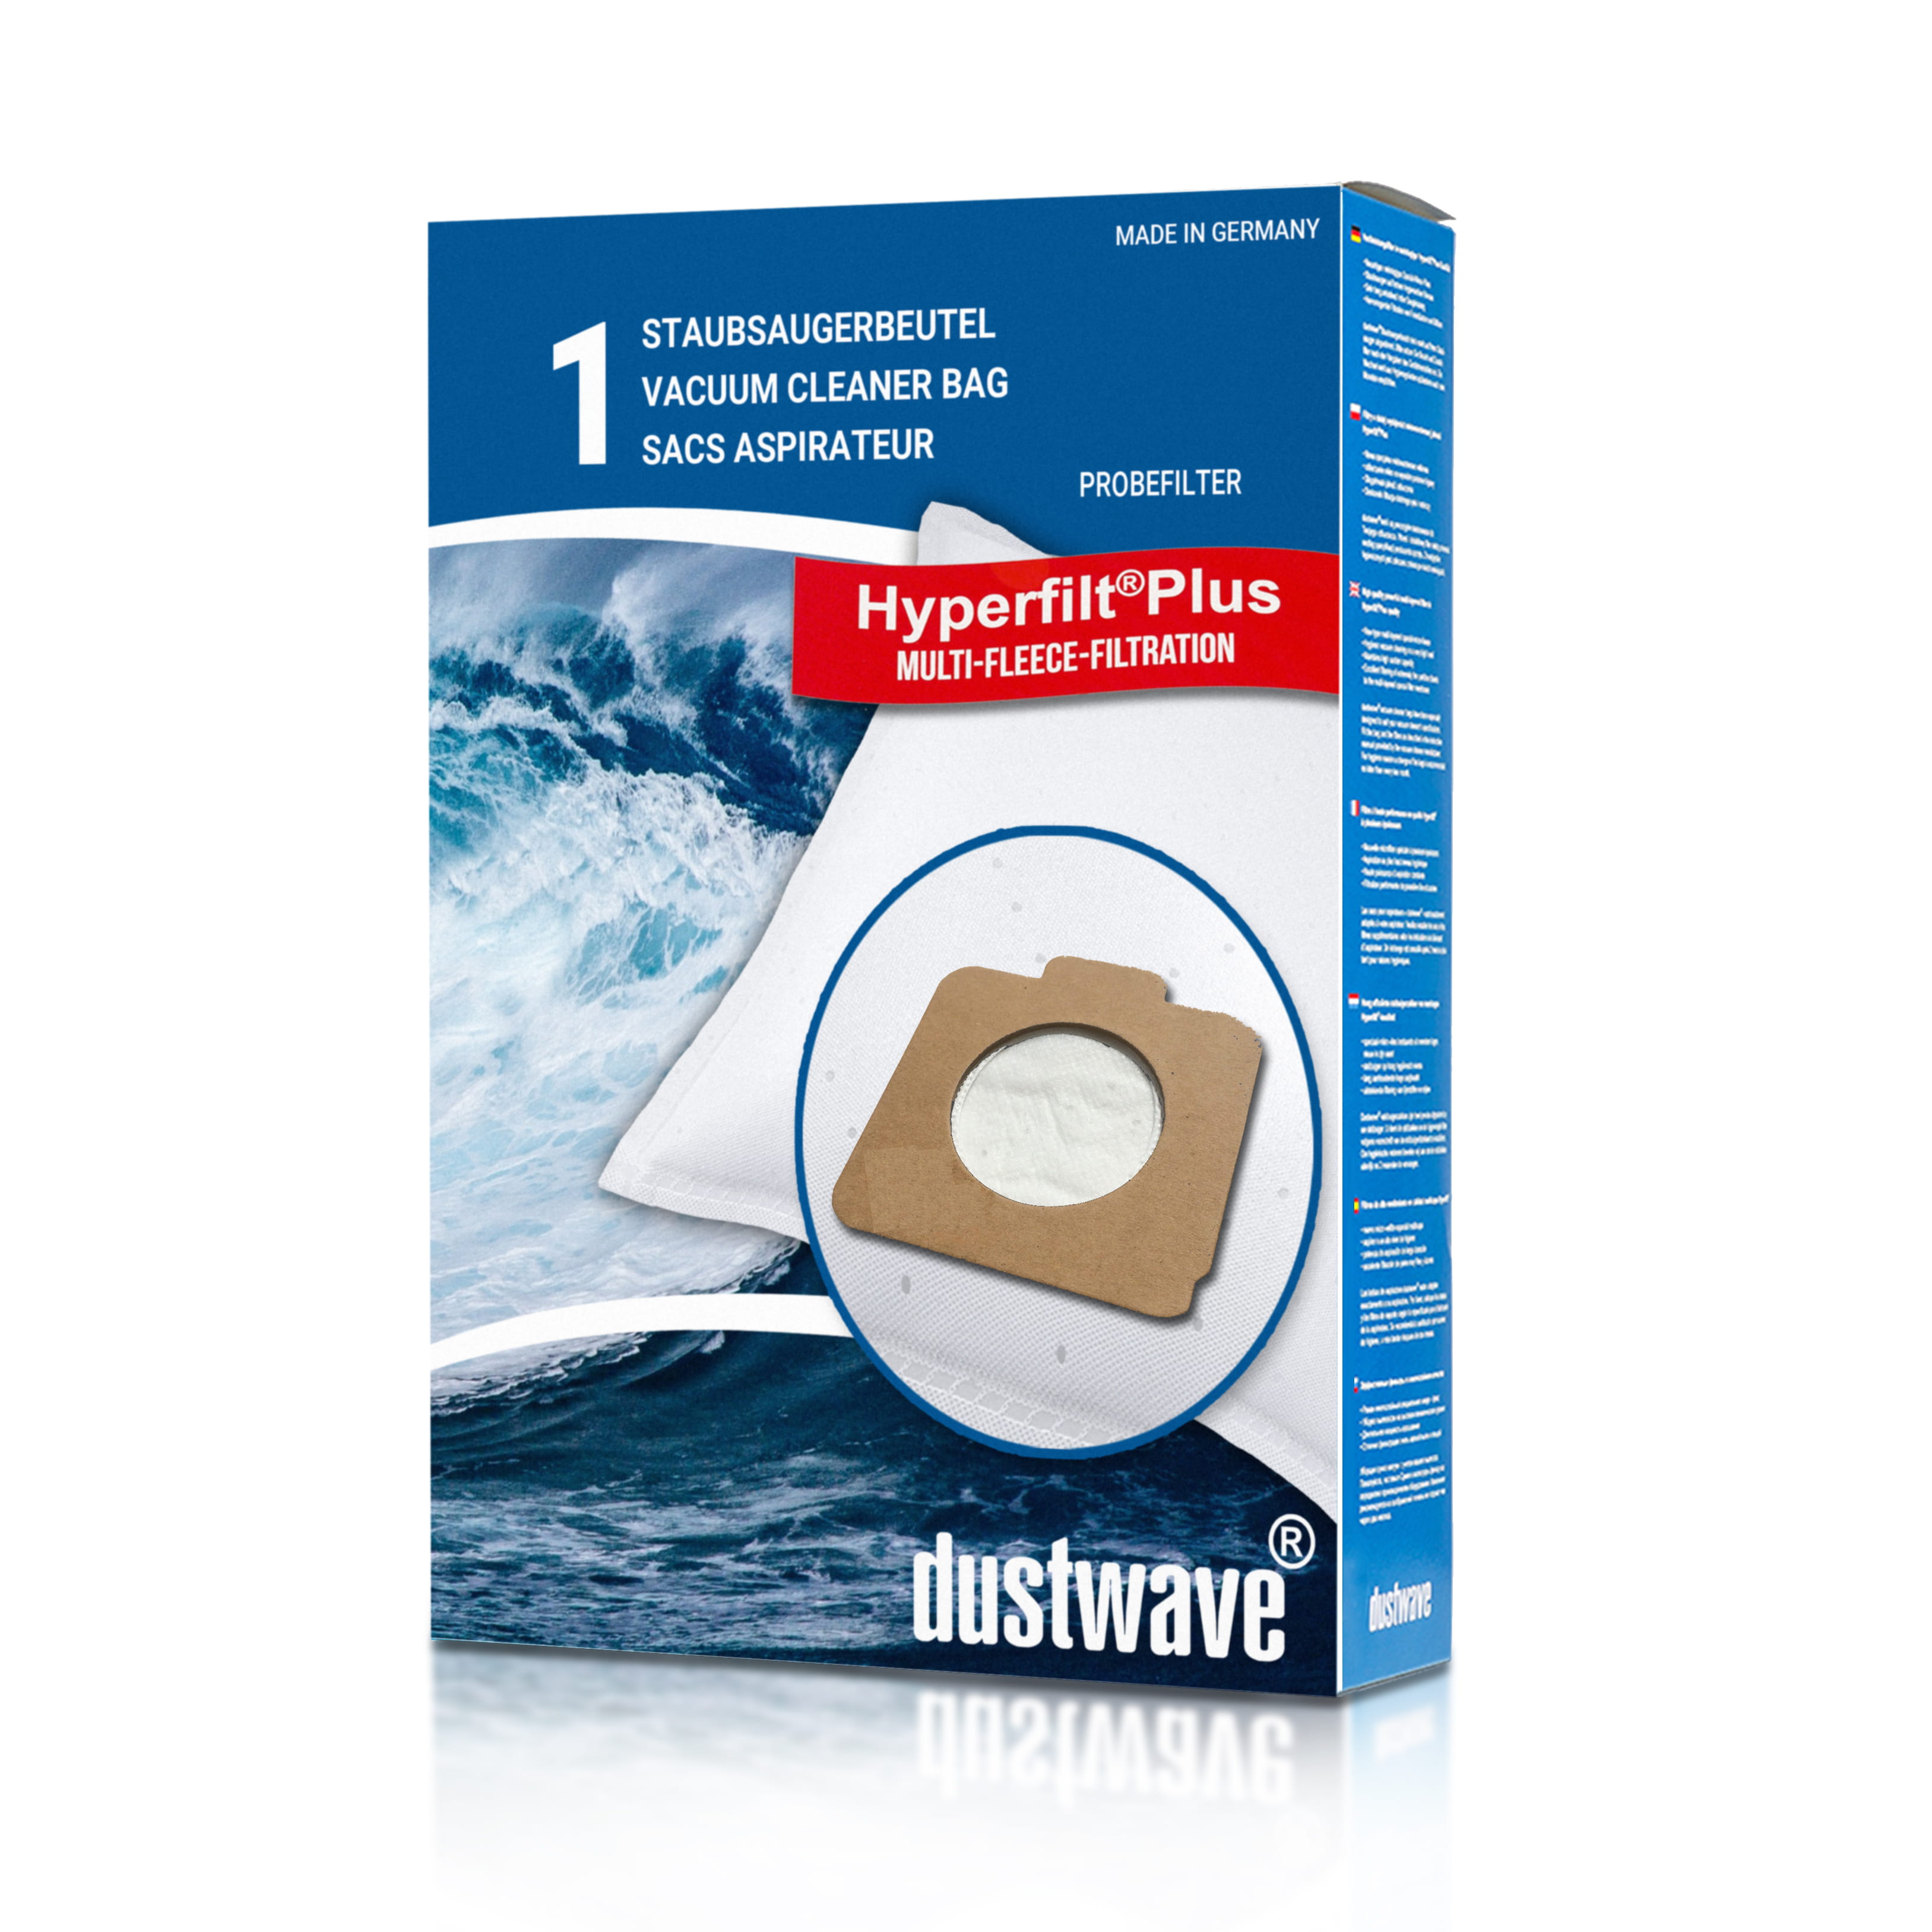 Dustwave® 1 Staubsaugerbeutel für Baur 340805 - hocheffizient mit Hygieneverschluss - Made in Germany